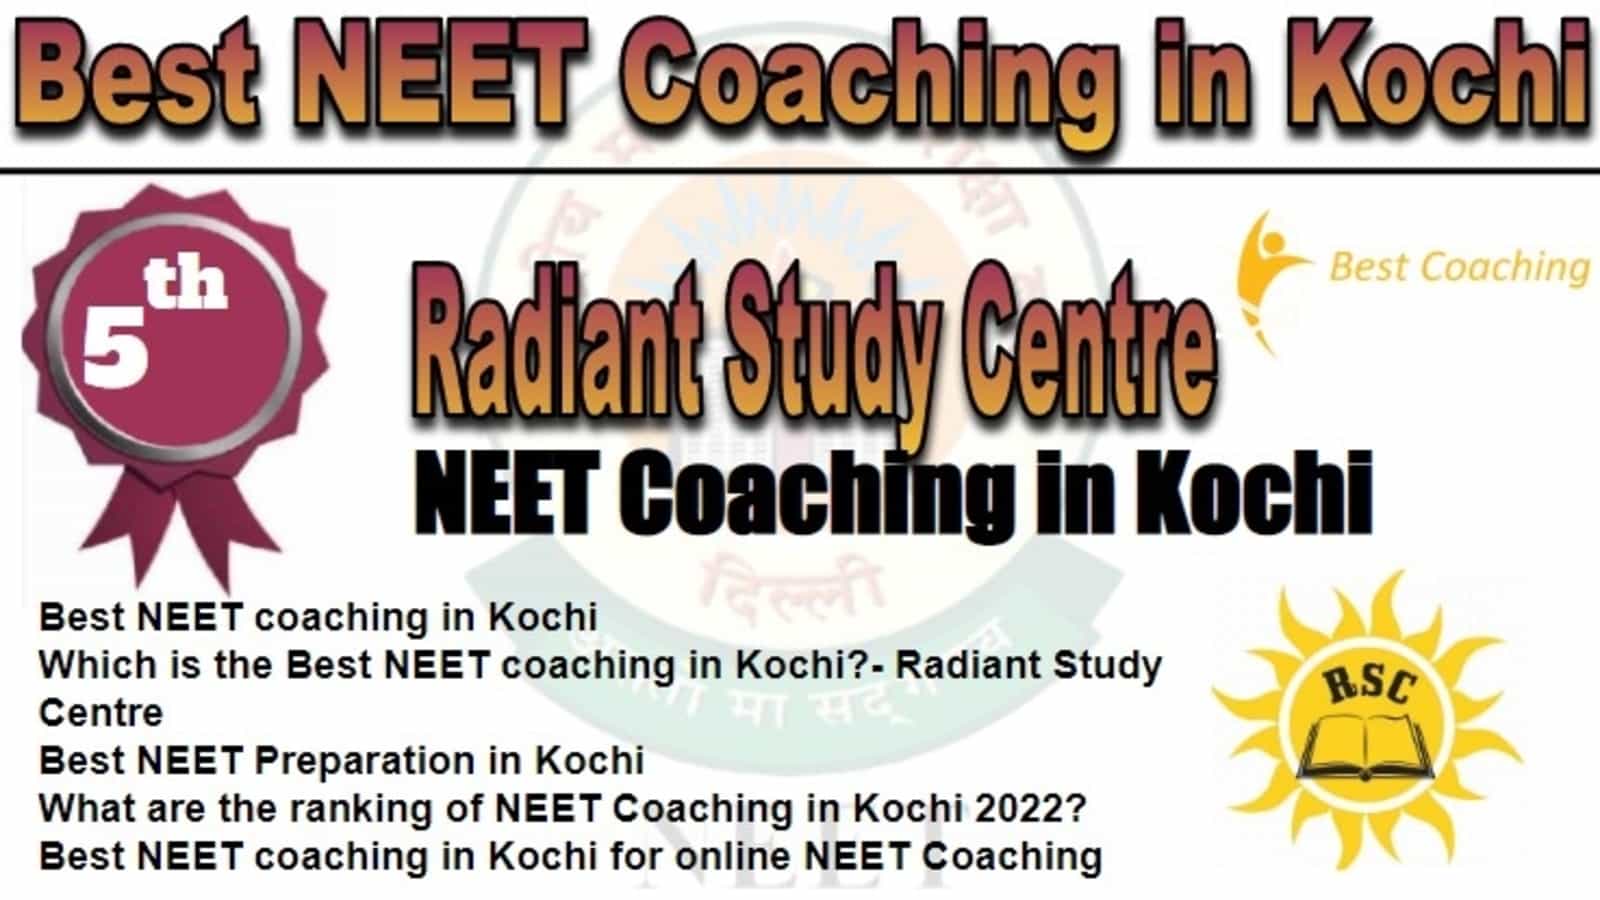 Rank 5 Best NEET Coaching in Kochi